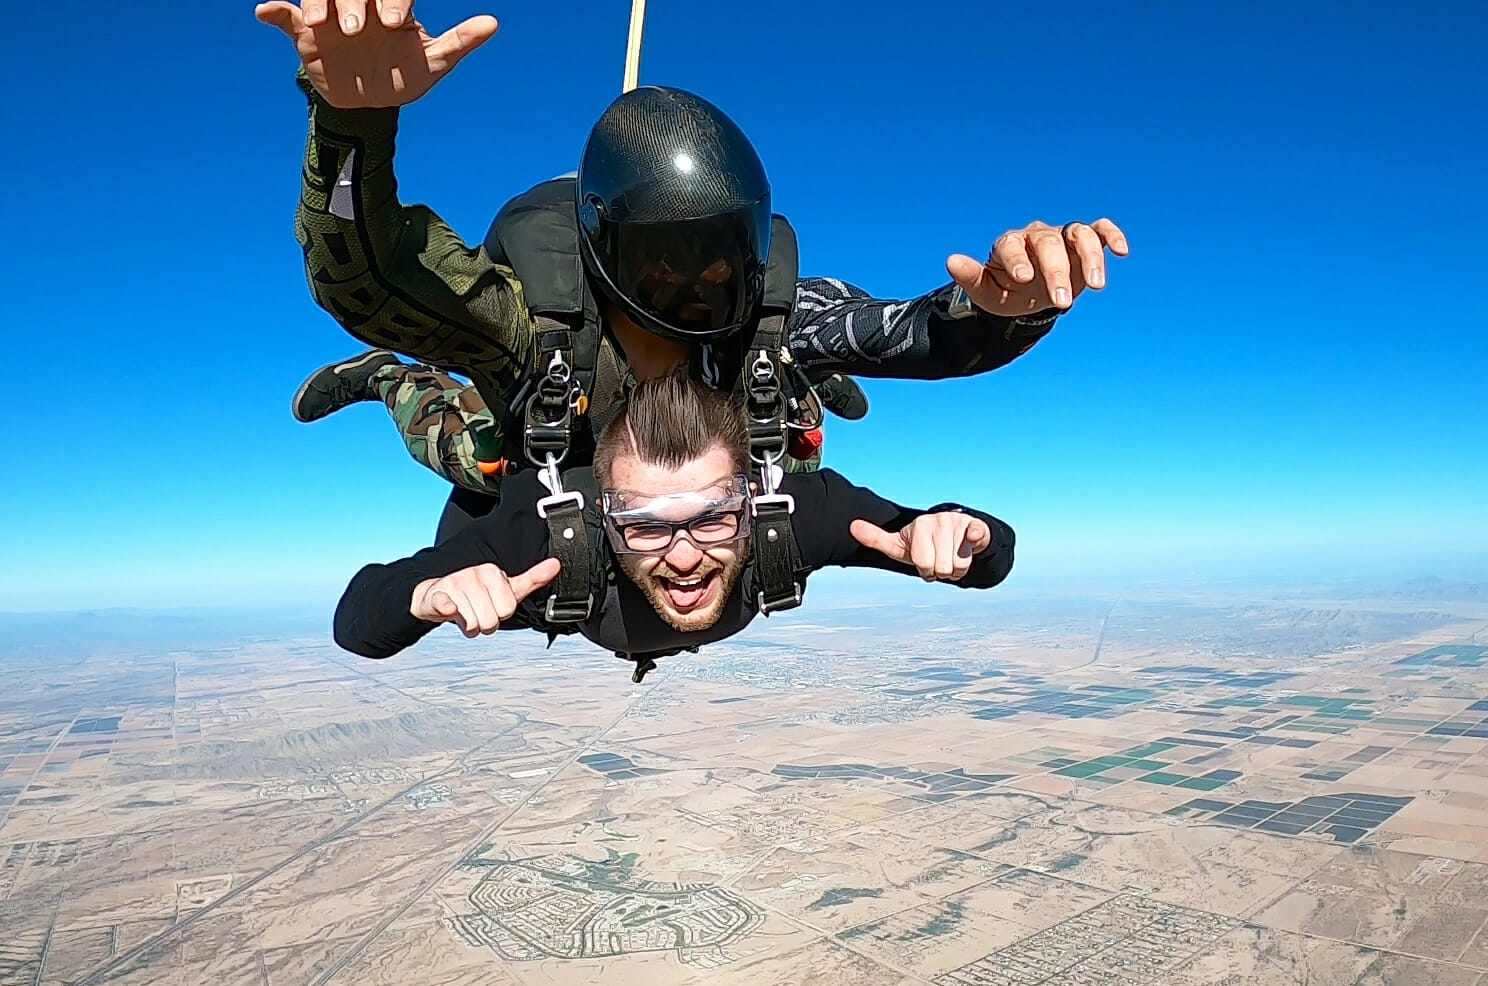 Here’s what it’s like to skydive in Arizona AZ Big Media